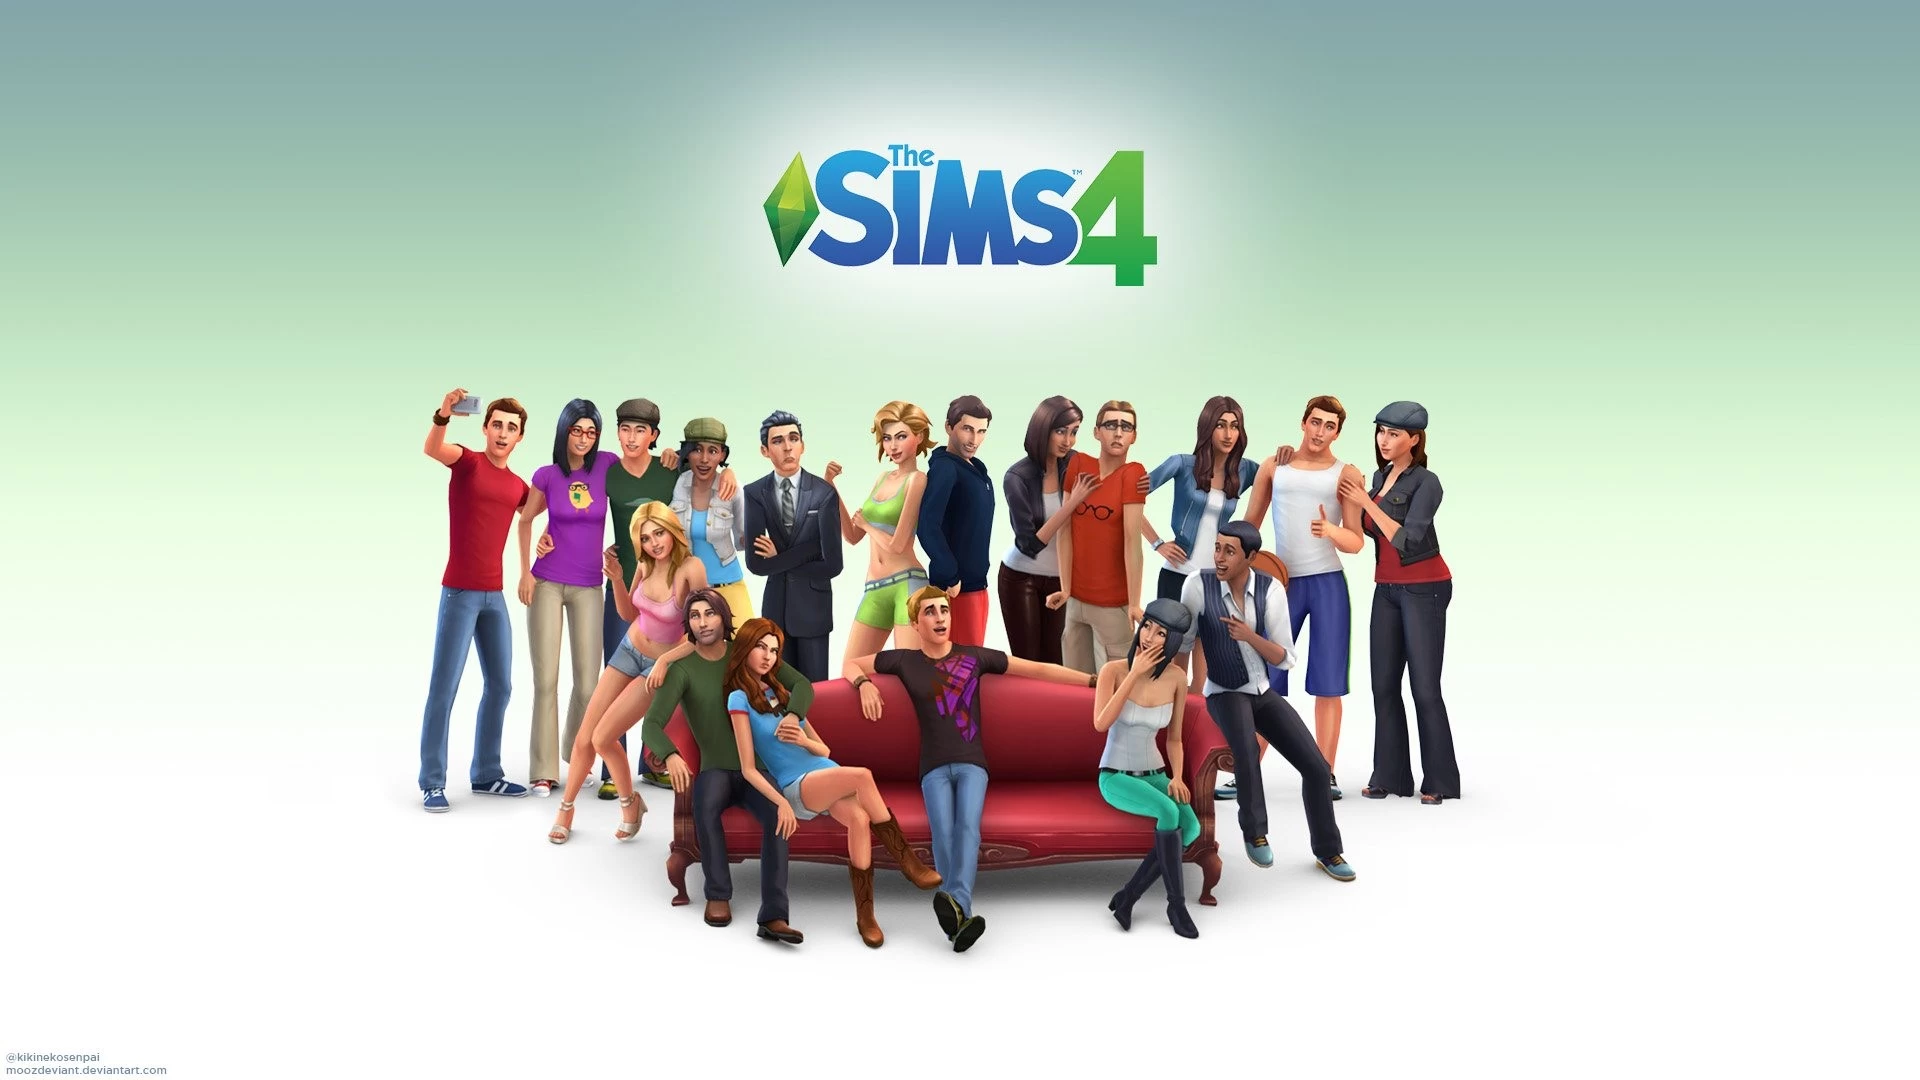 لعبة The Sims 4